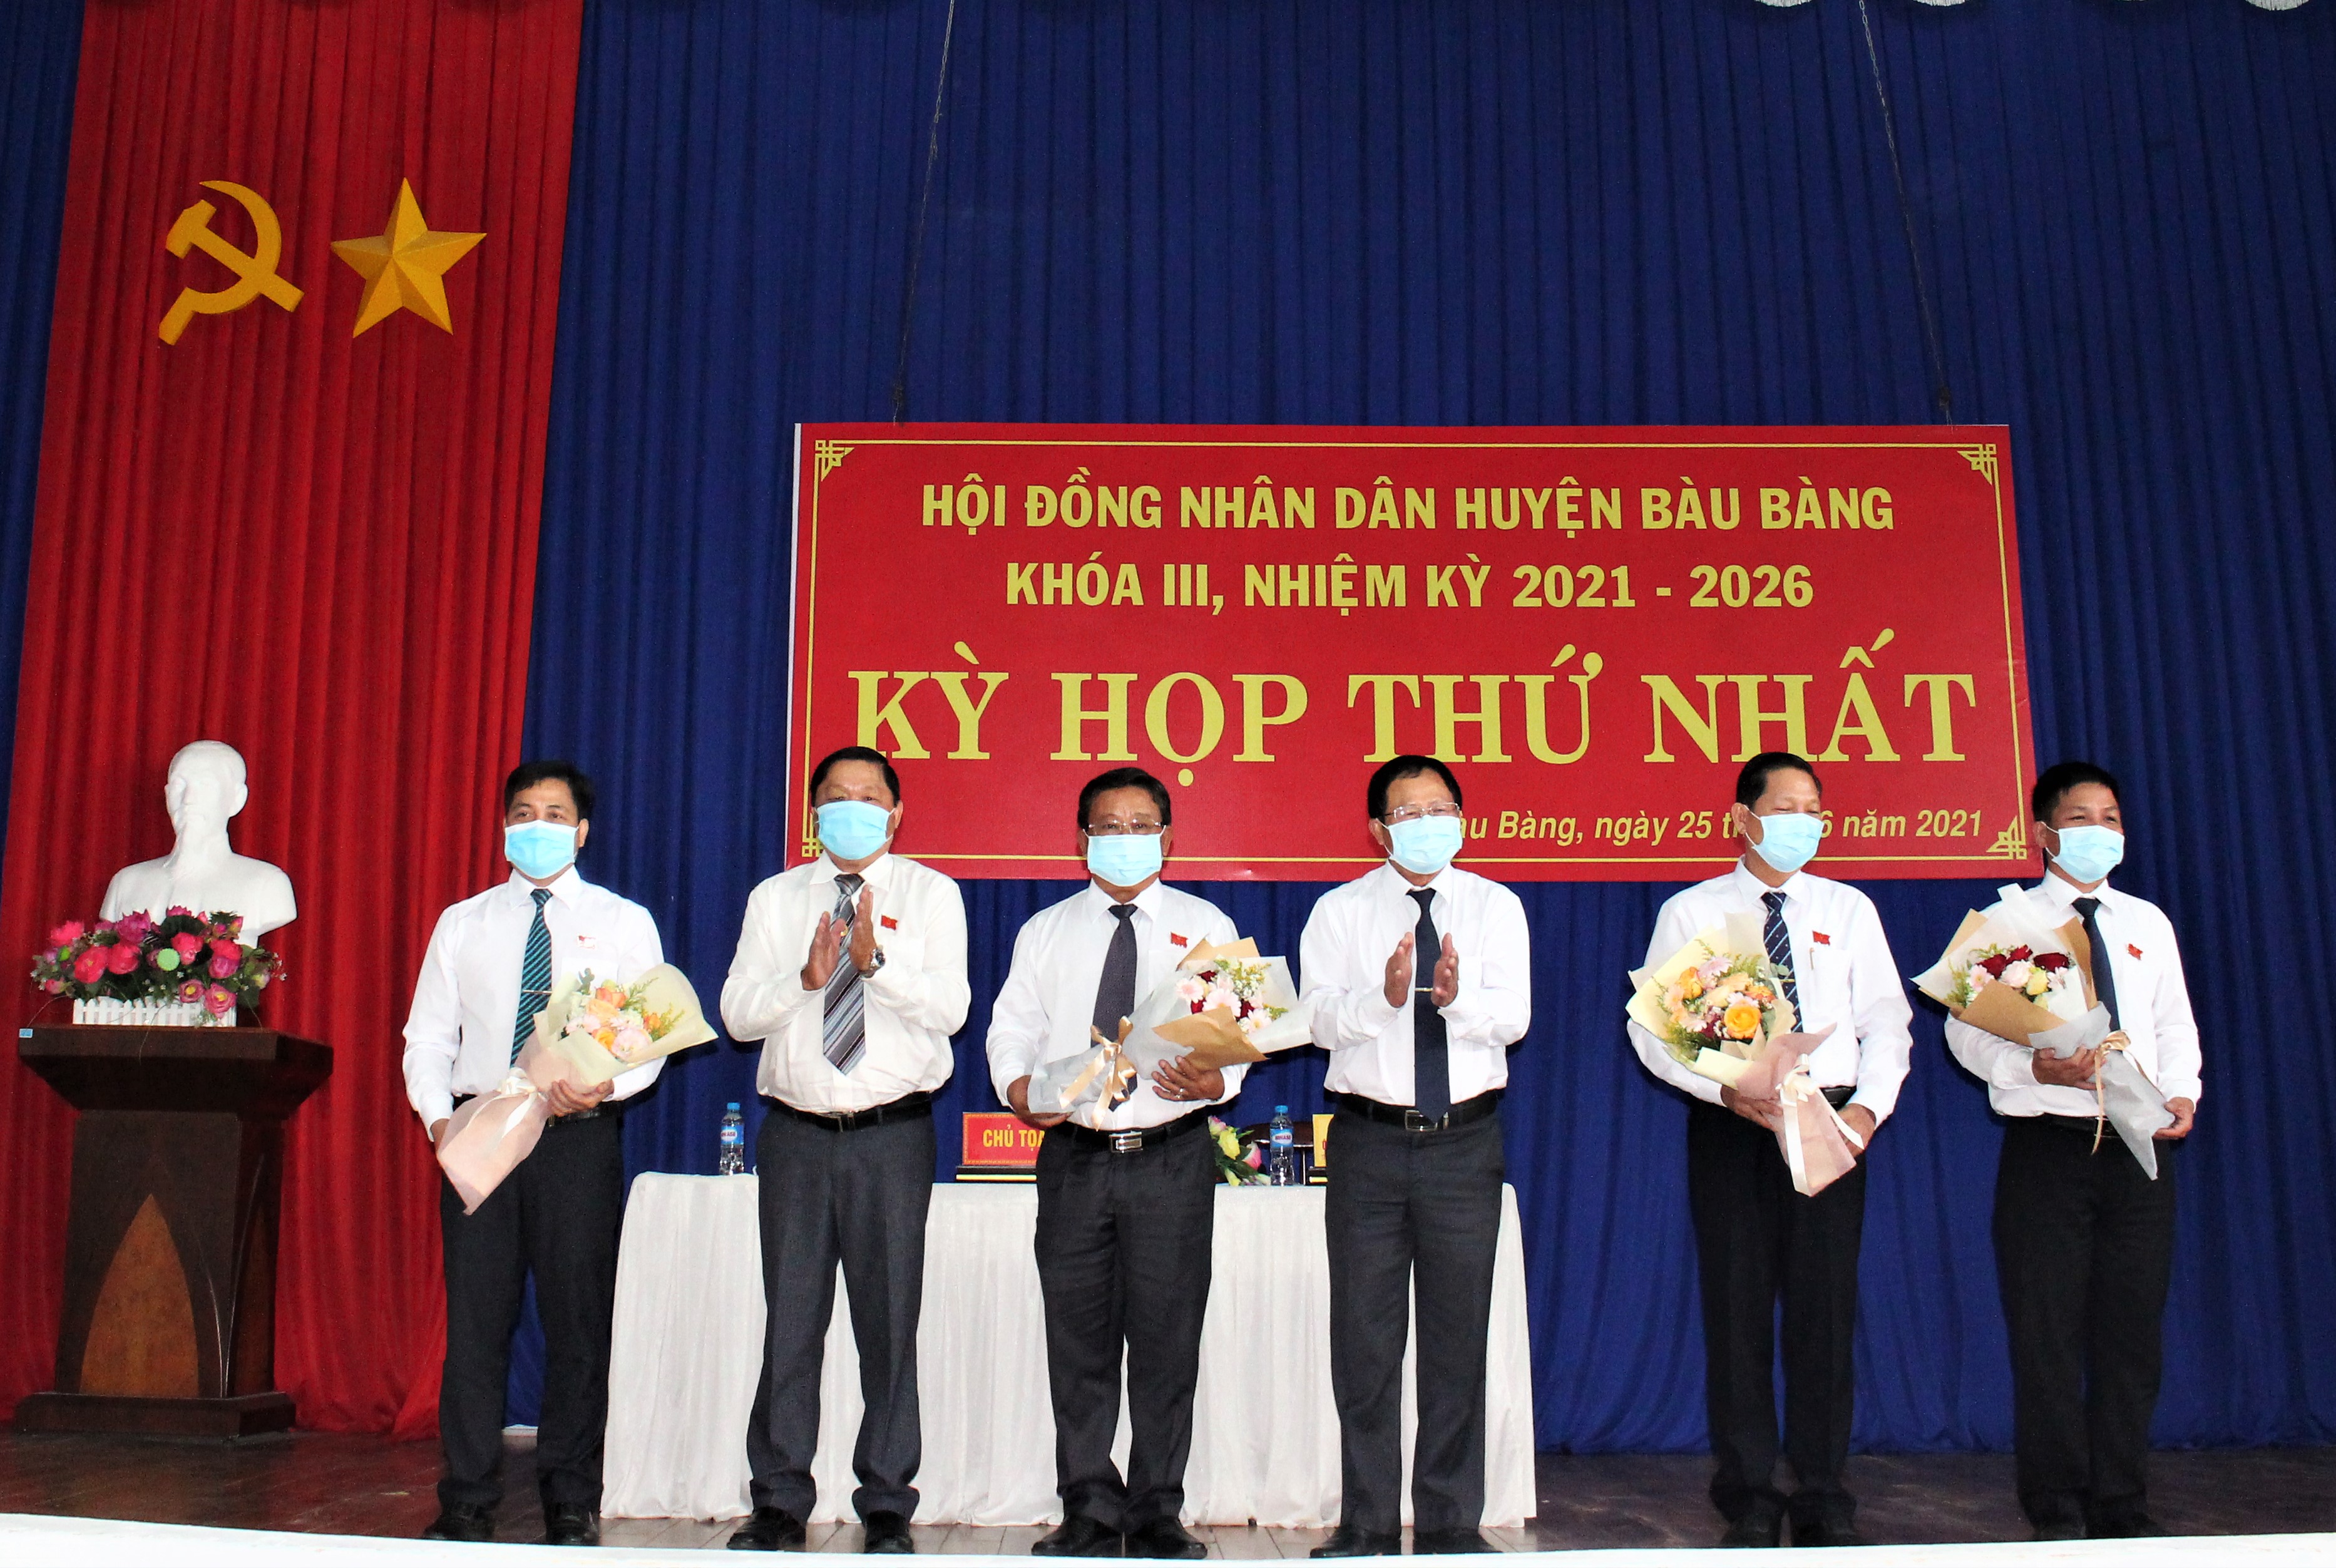 Kỳ họp thứ nhất HĐND huyện Bàu Bàng khóa III, nhiệm kỳ 2021-2026 kết thúc tốt đẹp